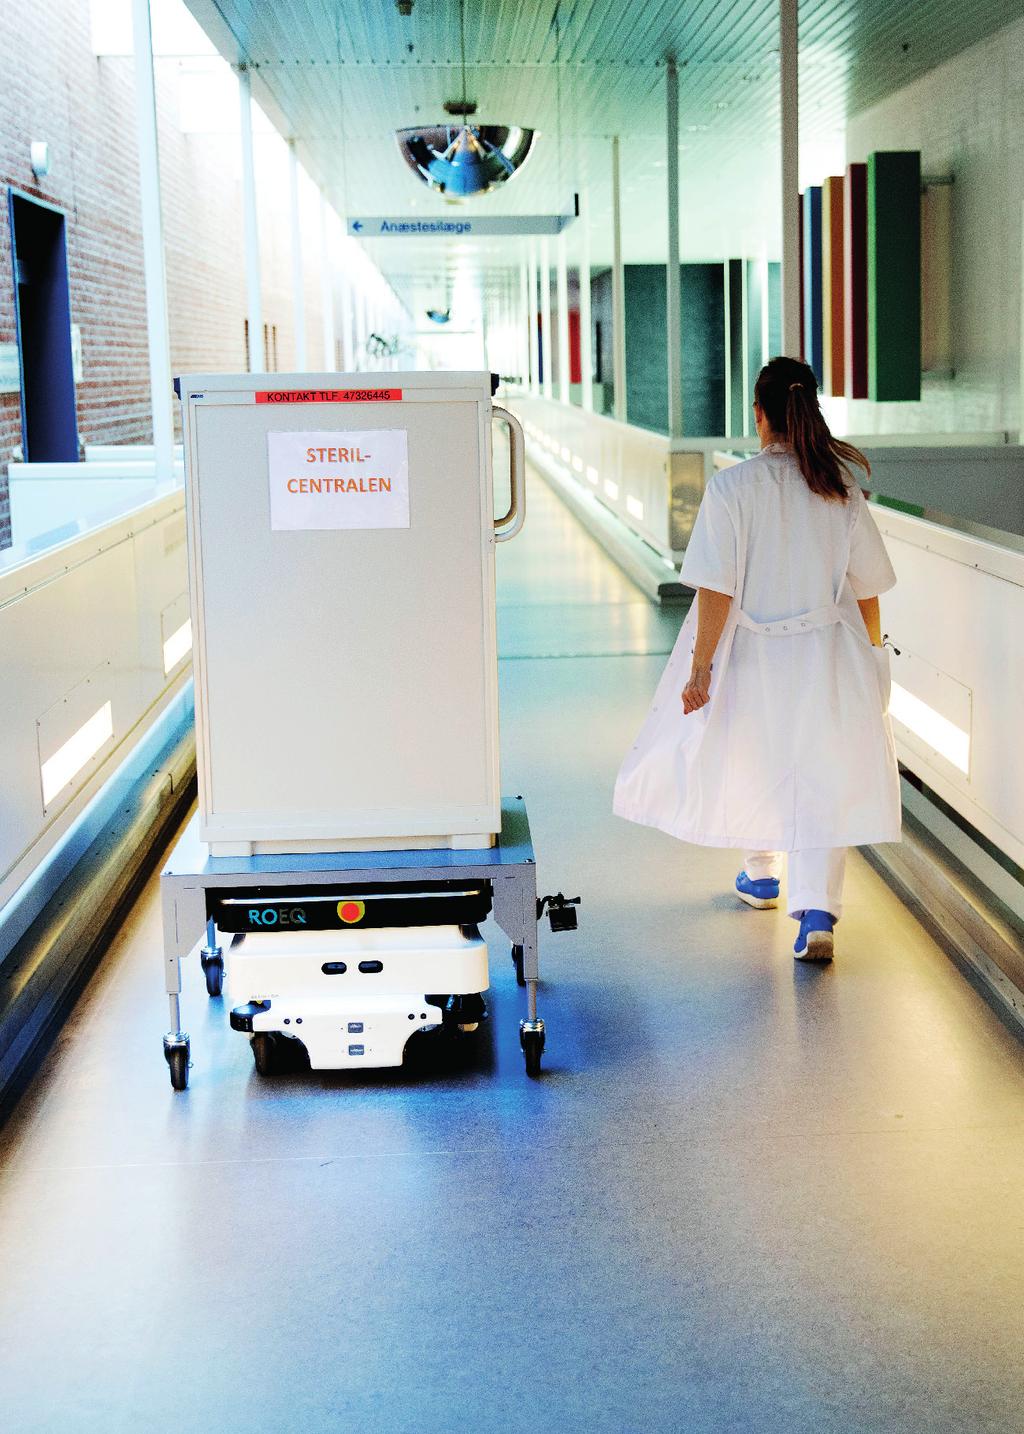 Szpital uniwersytecki Zealand Pięć oddziałów szpitala uniwersyteckiego Zealand w Danii obsługuje robot MiR100 realizujący dostawy z przyszpitalnego centrum sterylizacji.